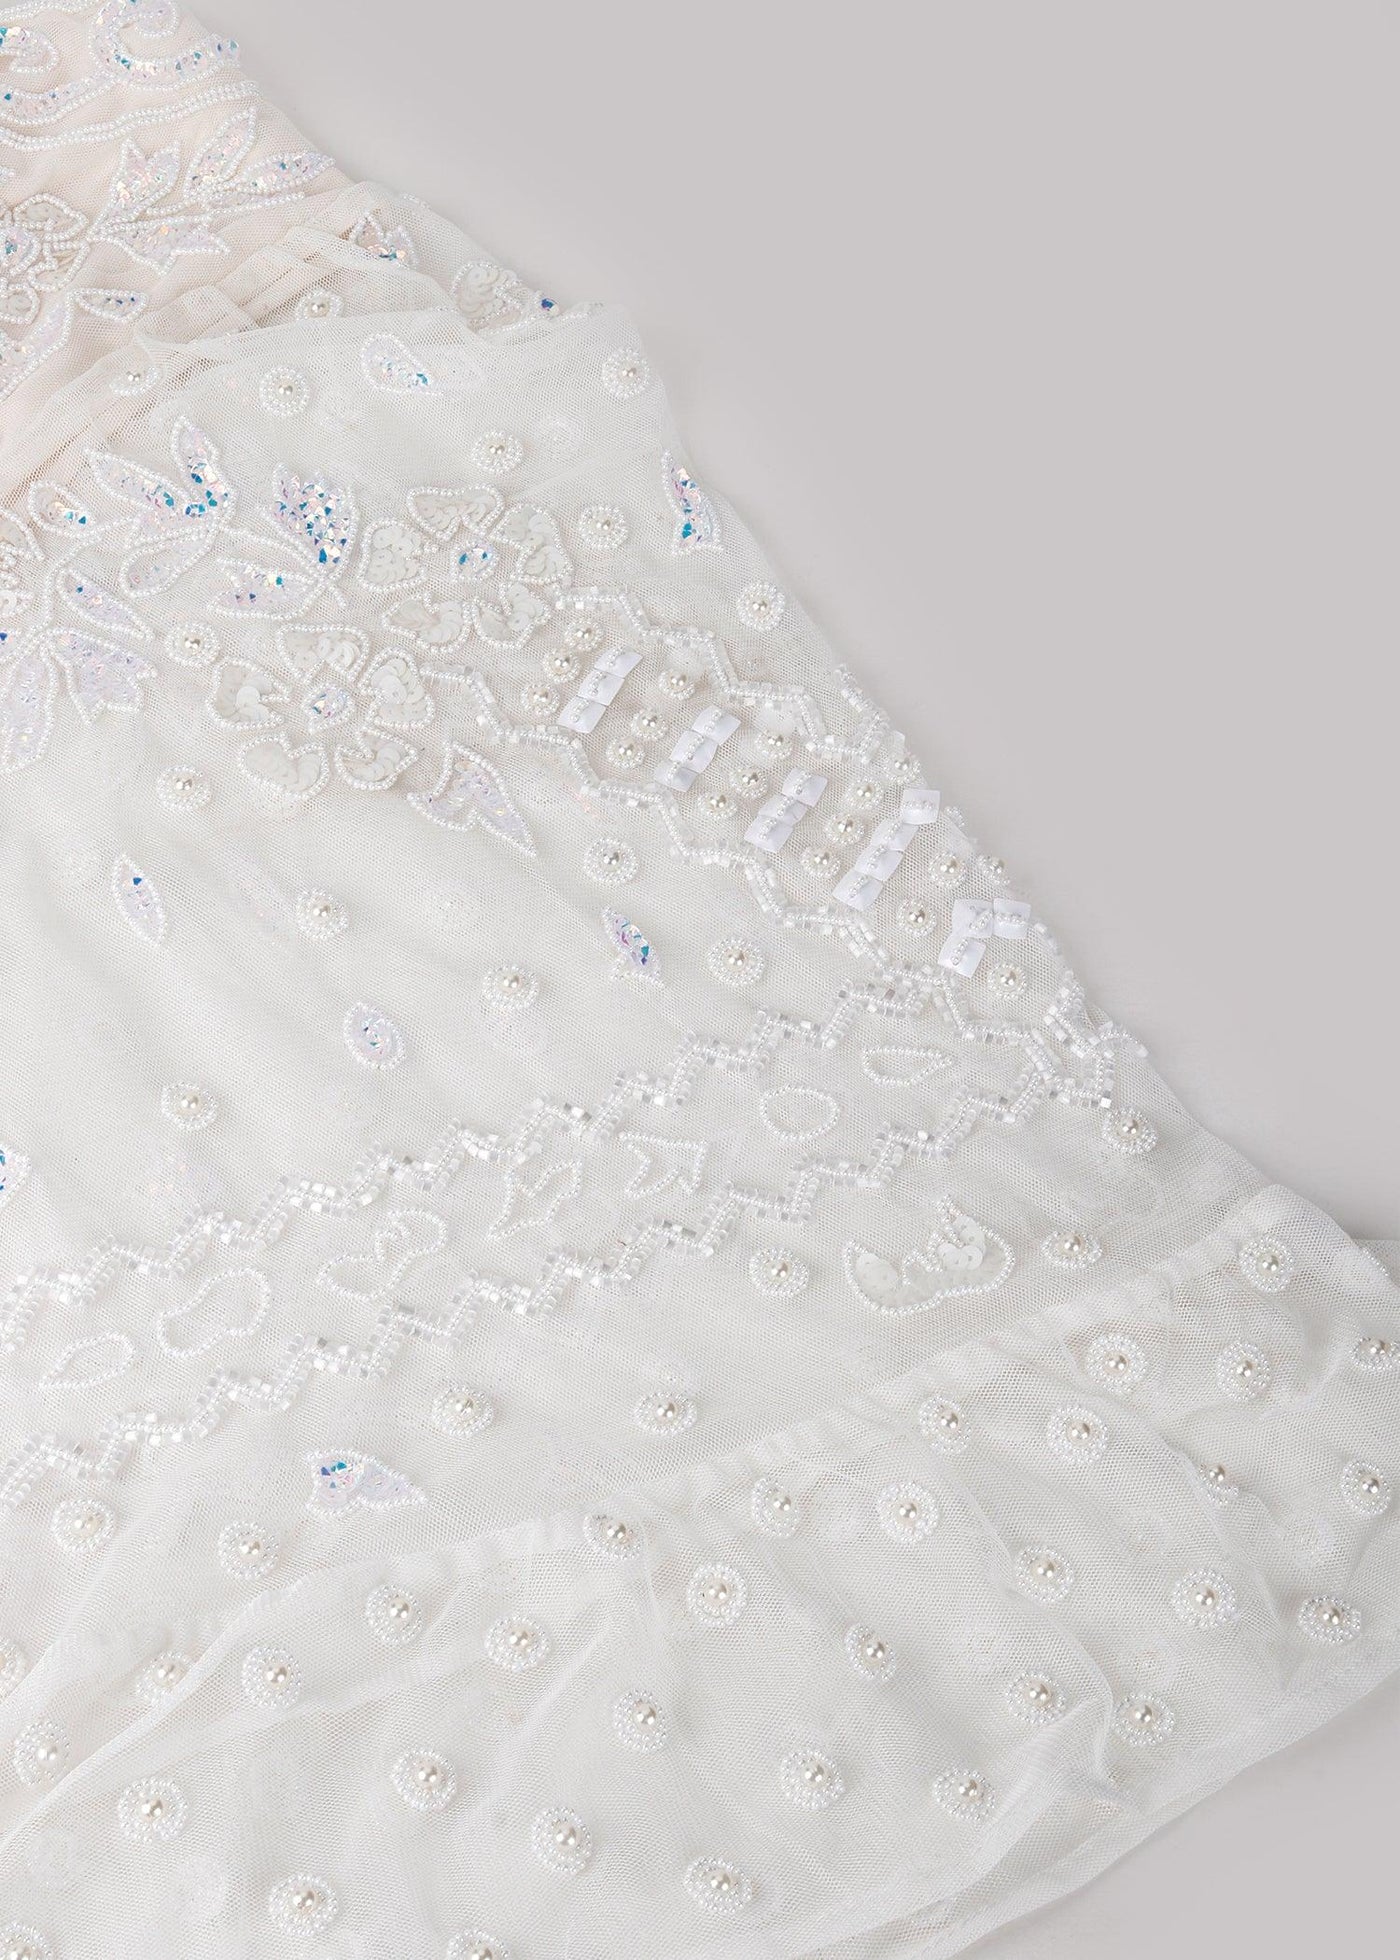 Elegant White Party Dress - Odette